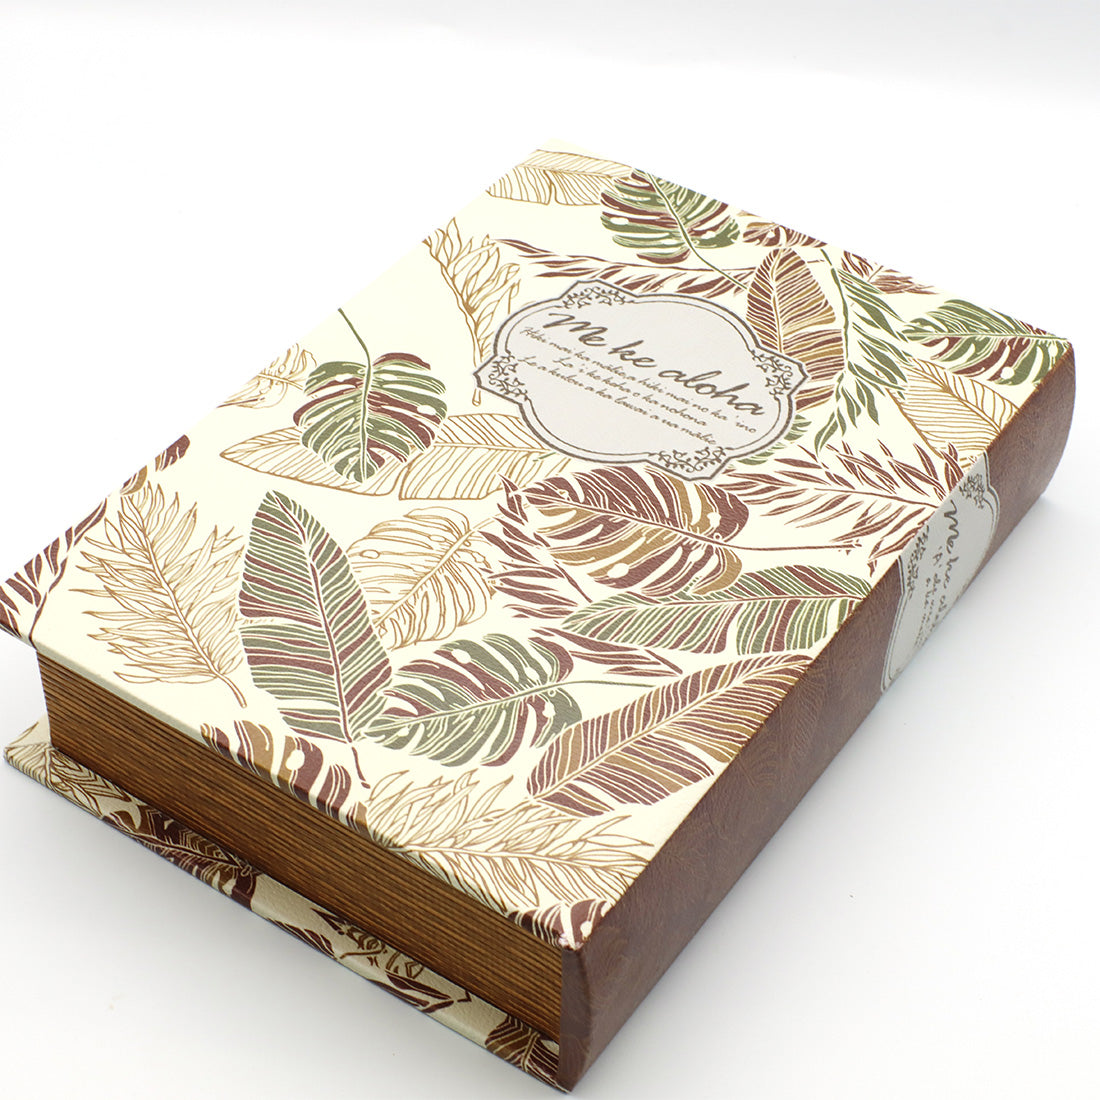 ブックタイプ収納ボックス 本のデザイン箱 小物入れ 鍵入れ モンステラ柄ボックス ナチュラルリーフ 植物柄 – seashells